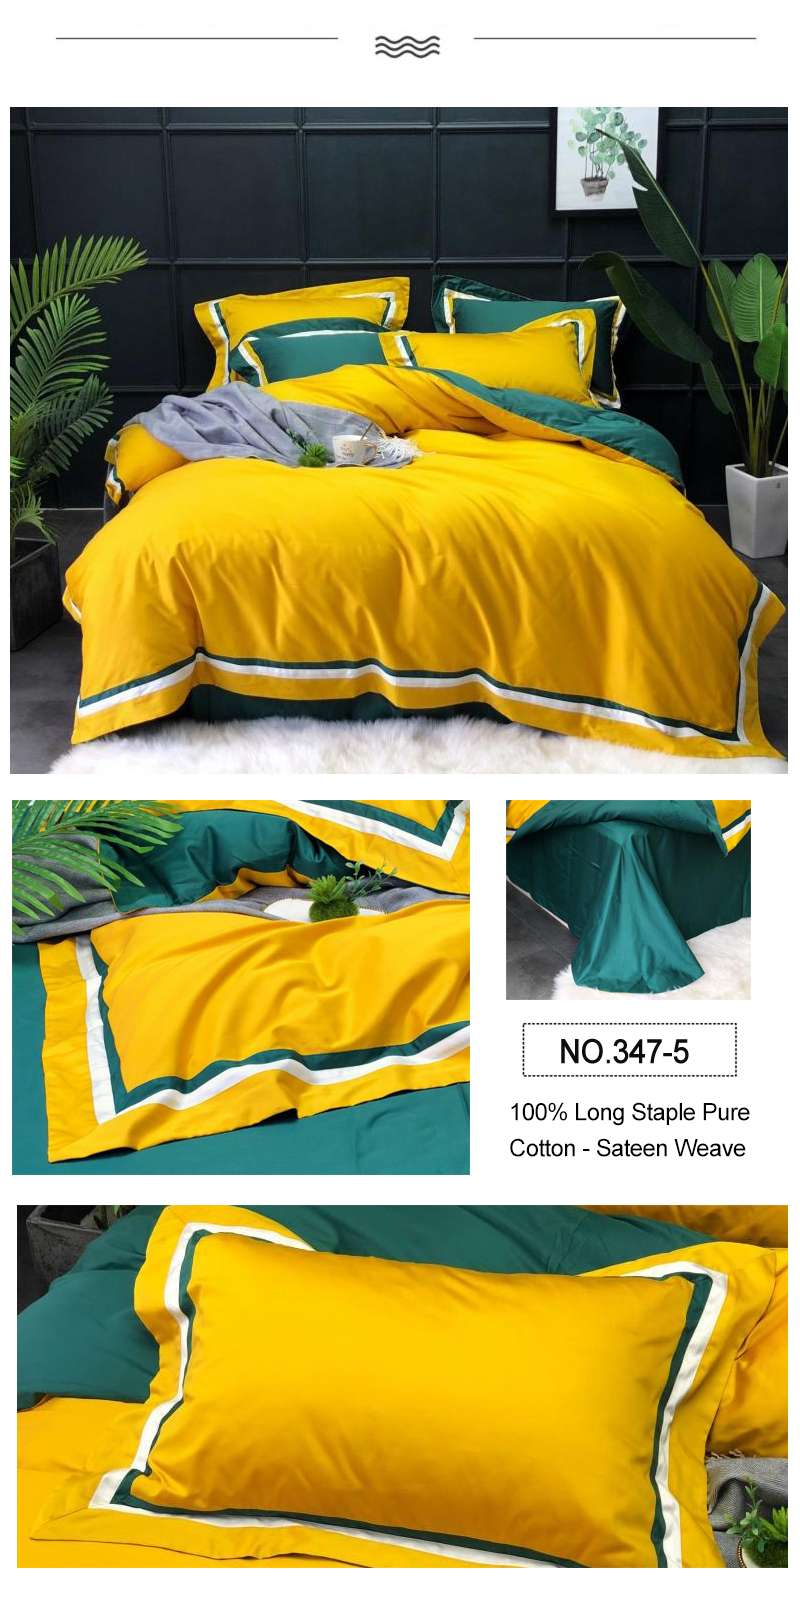 Turquoise 4PCS Bedding Set 100% Long Staple Cotton